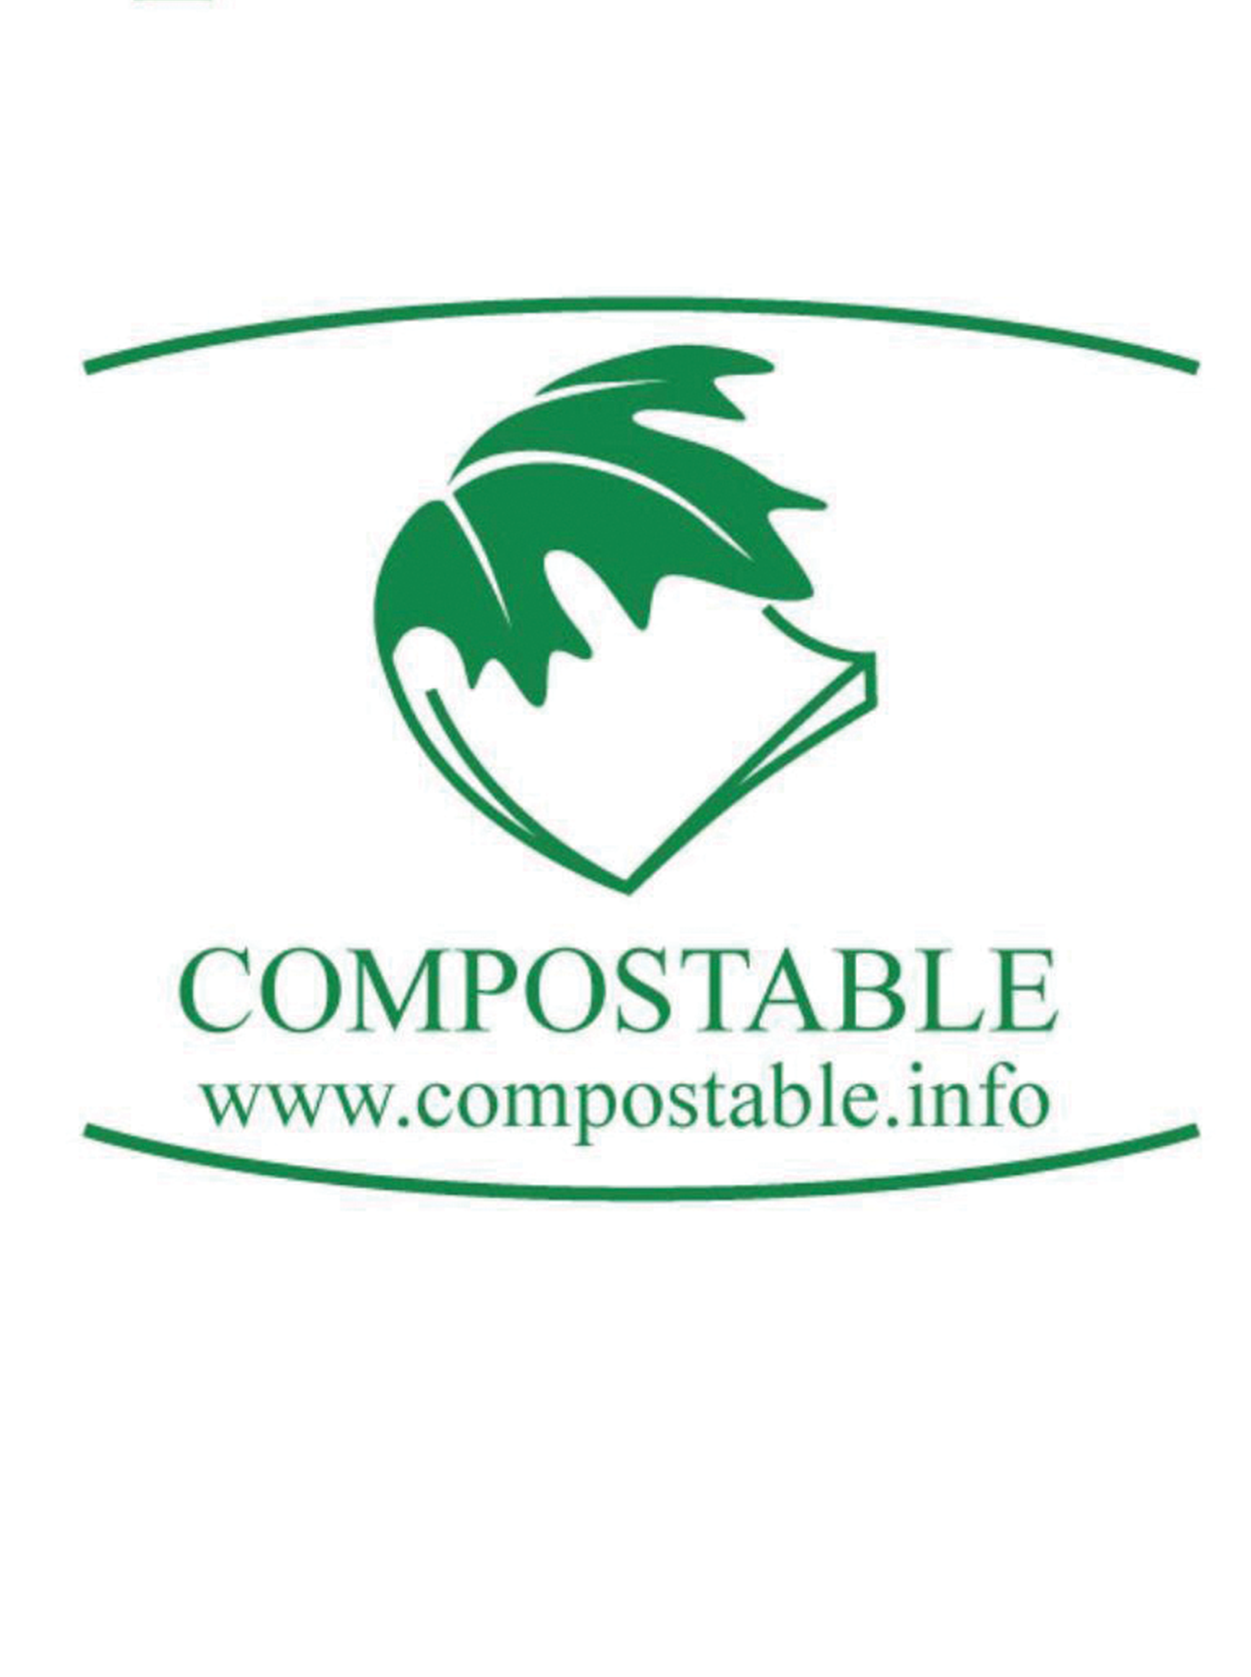 COMPOSTABLE logo